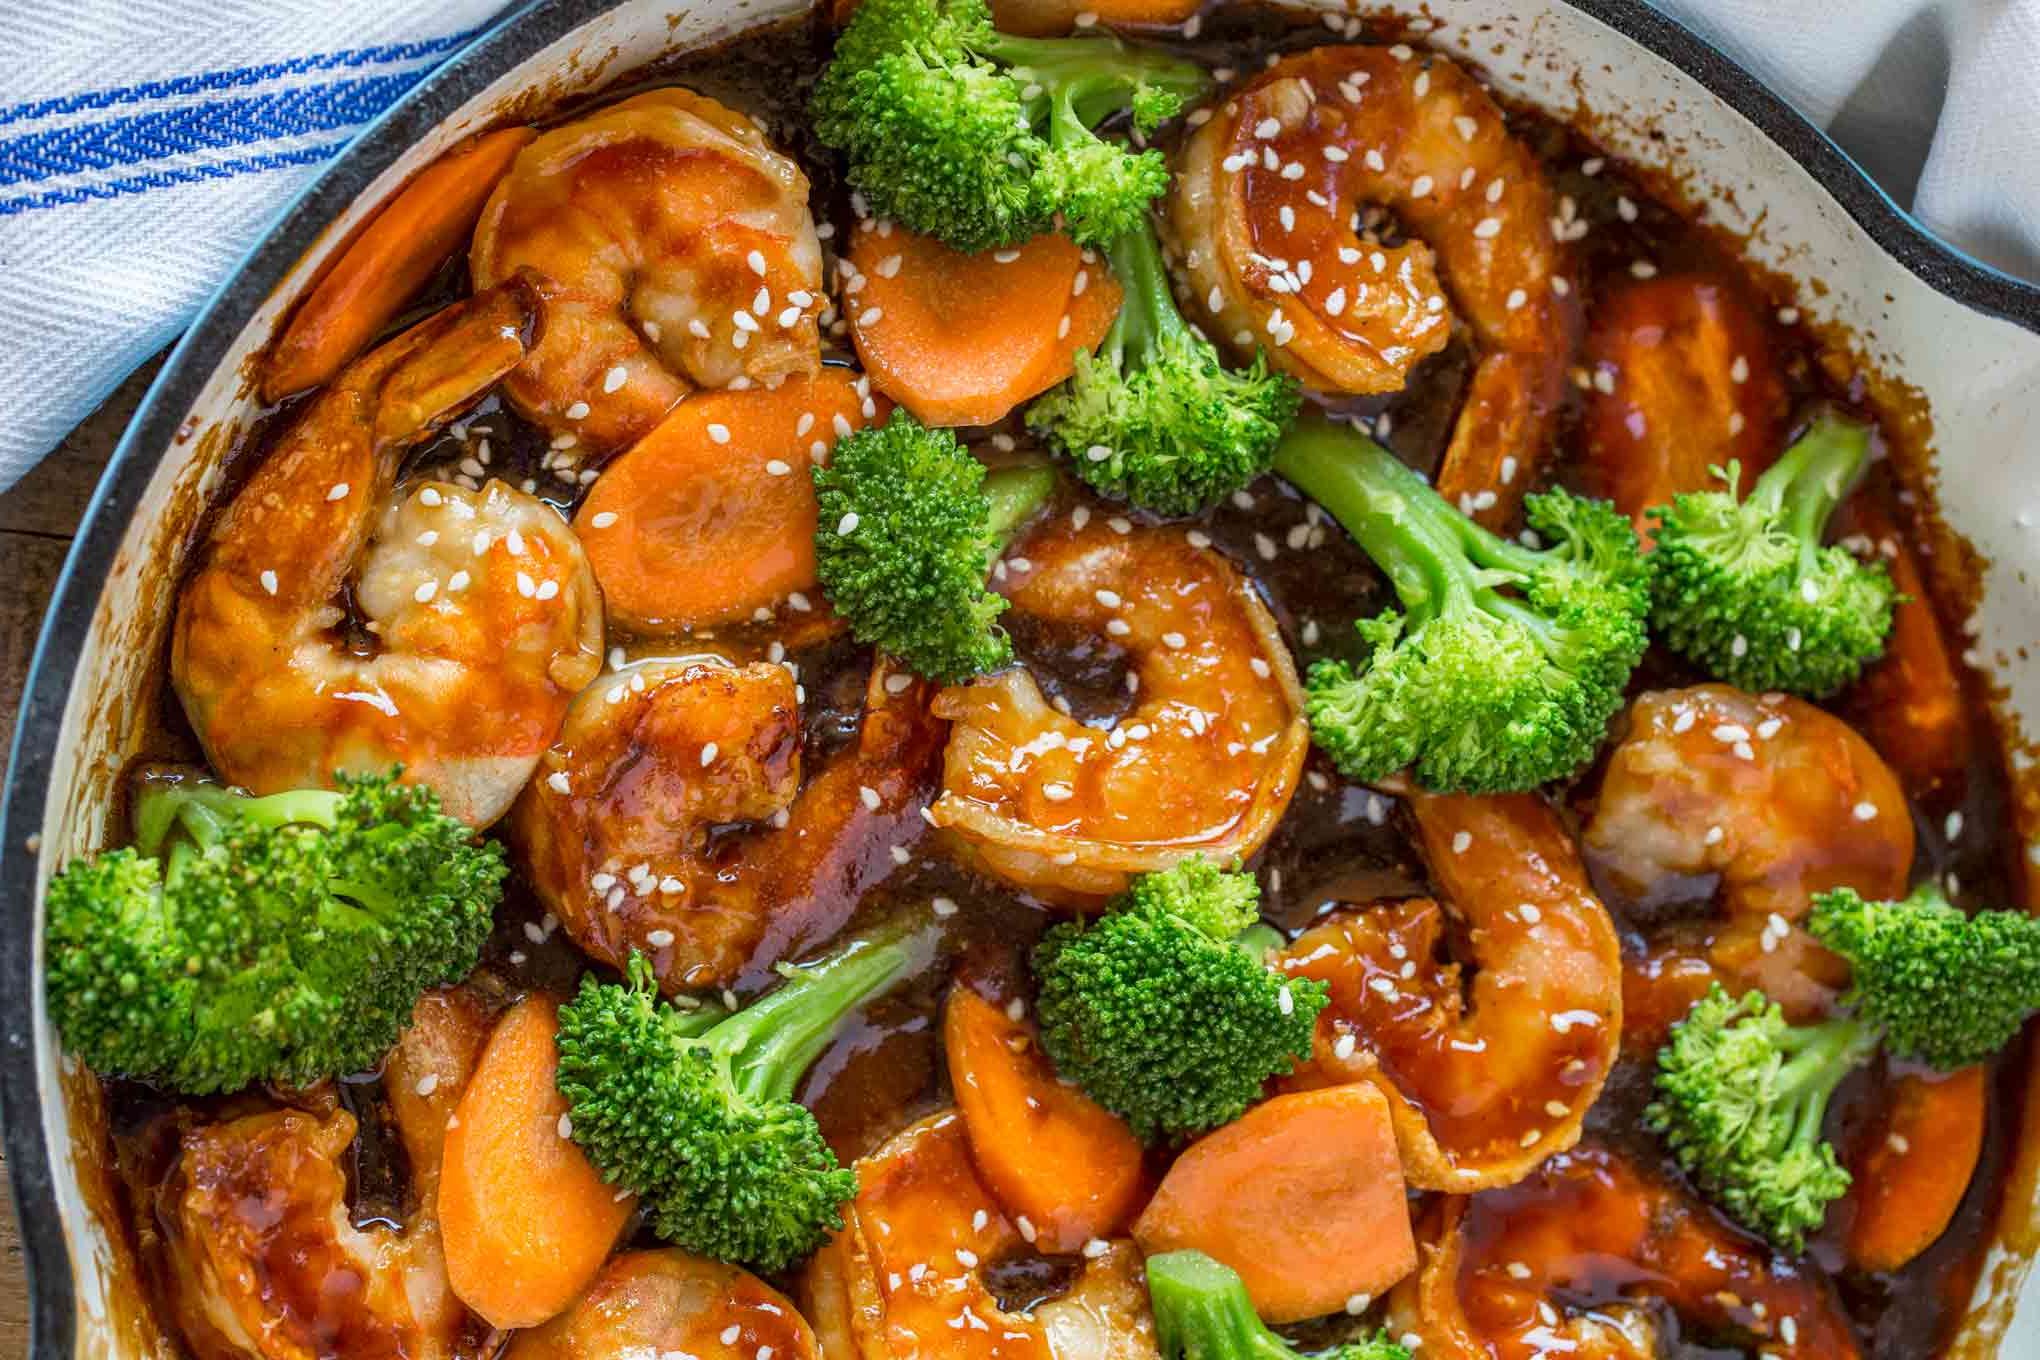 Shrimp and Broccoli Stir Fry Recipe Details